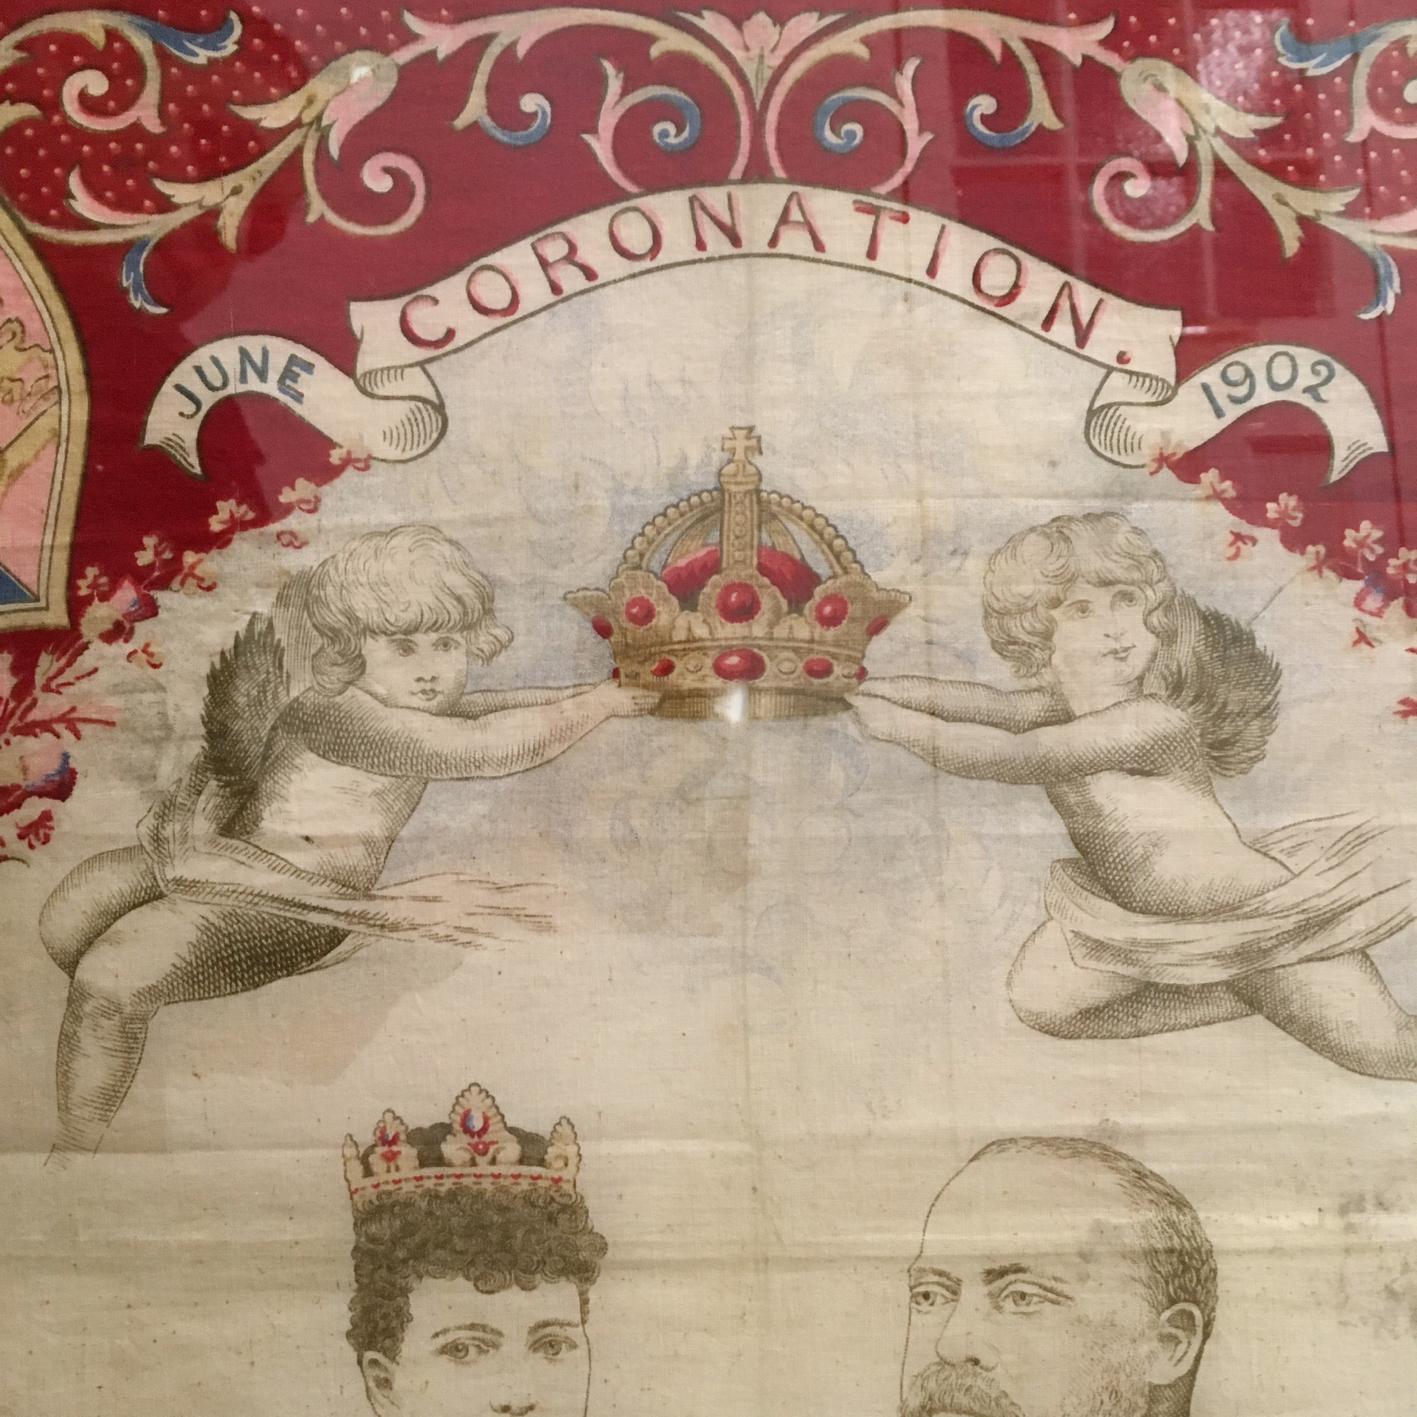 Couronnement du roi Édouard VII, juin 1902, écharpe / drapeau encadré.

Cette écharpe est une pièce antique originale de l'histoire britannique et un souvenir patriotique.

Elle a été réalisée pour la célébration du couronnement en 1902.

Il y